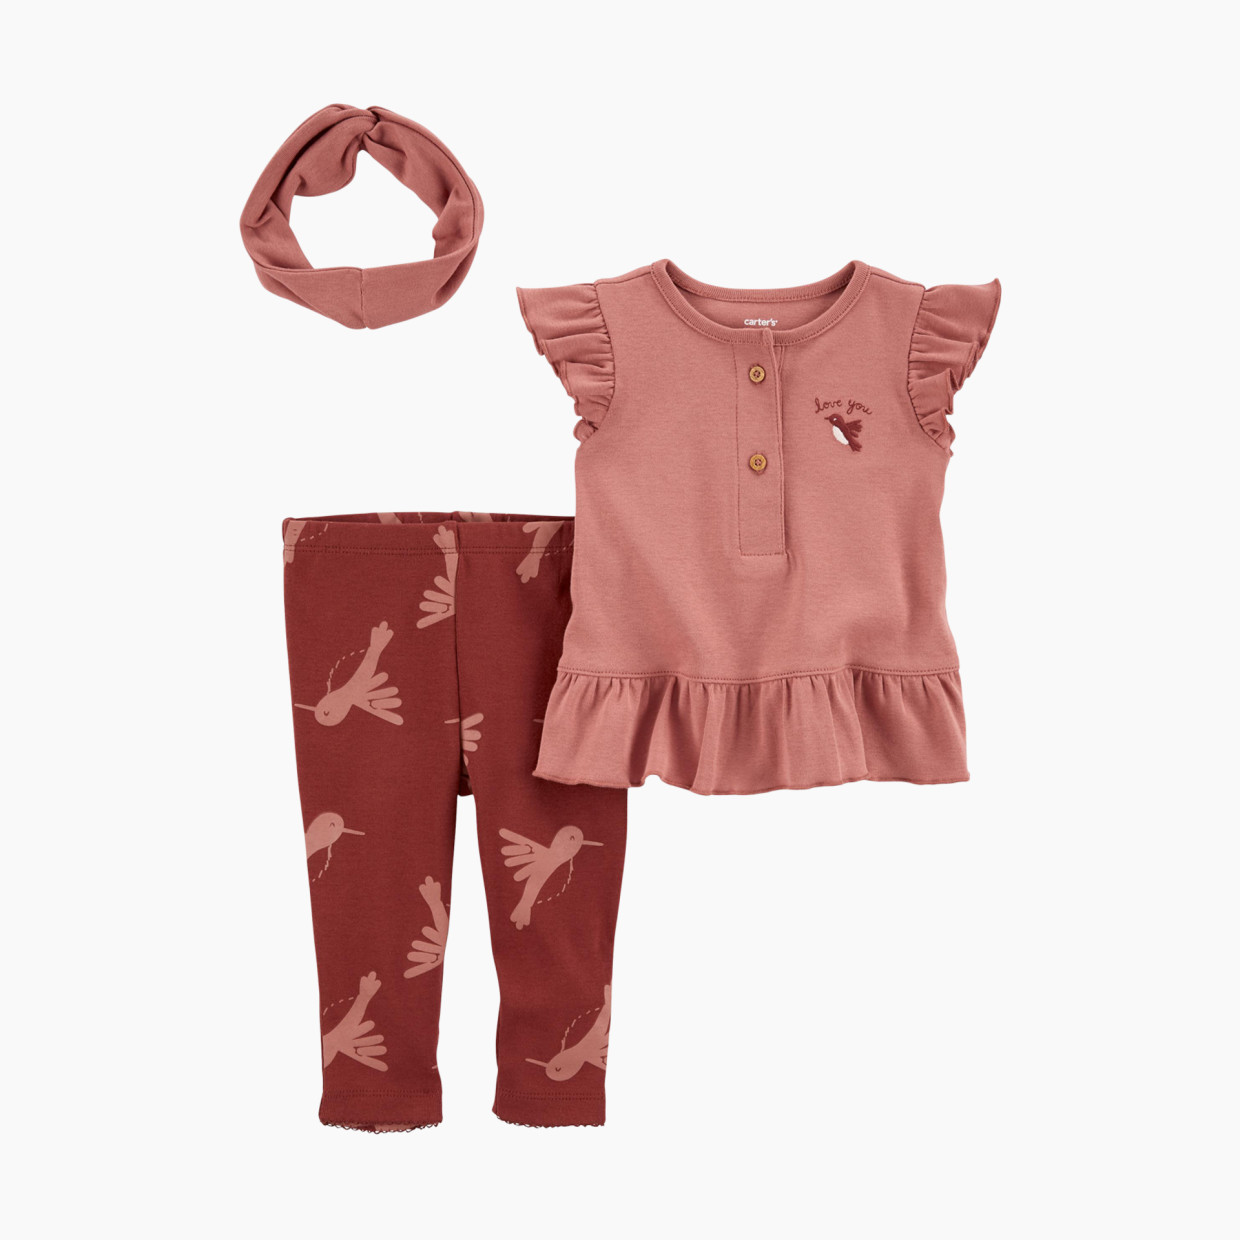 Carter's 3-Piece Little Bird Outfit Set - Brown/Pink Birds, Nb.